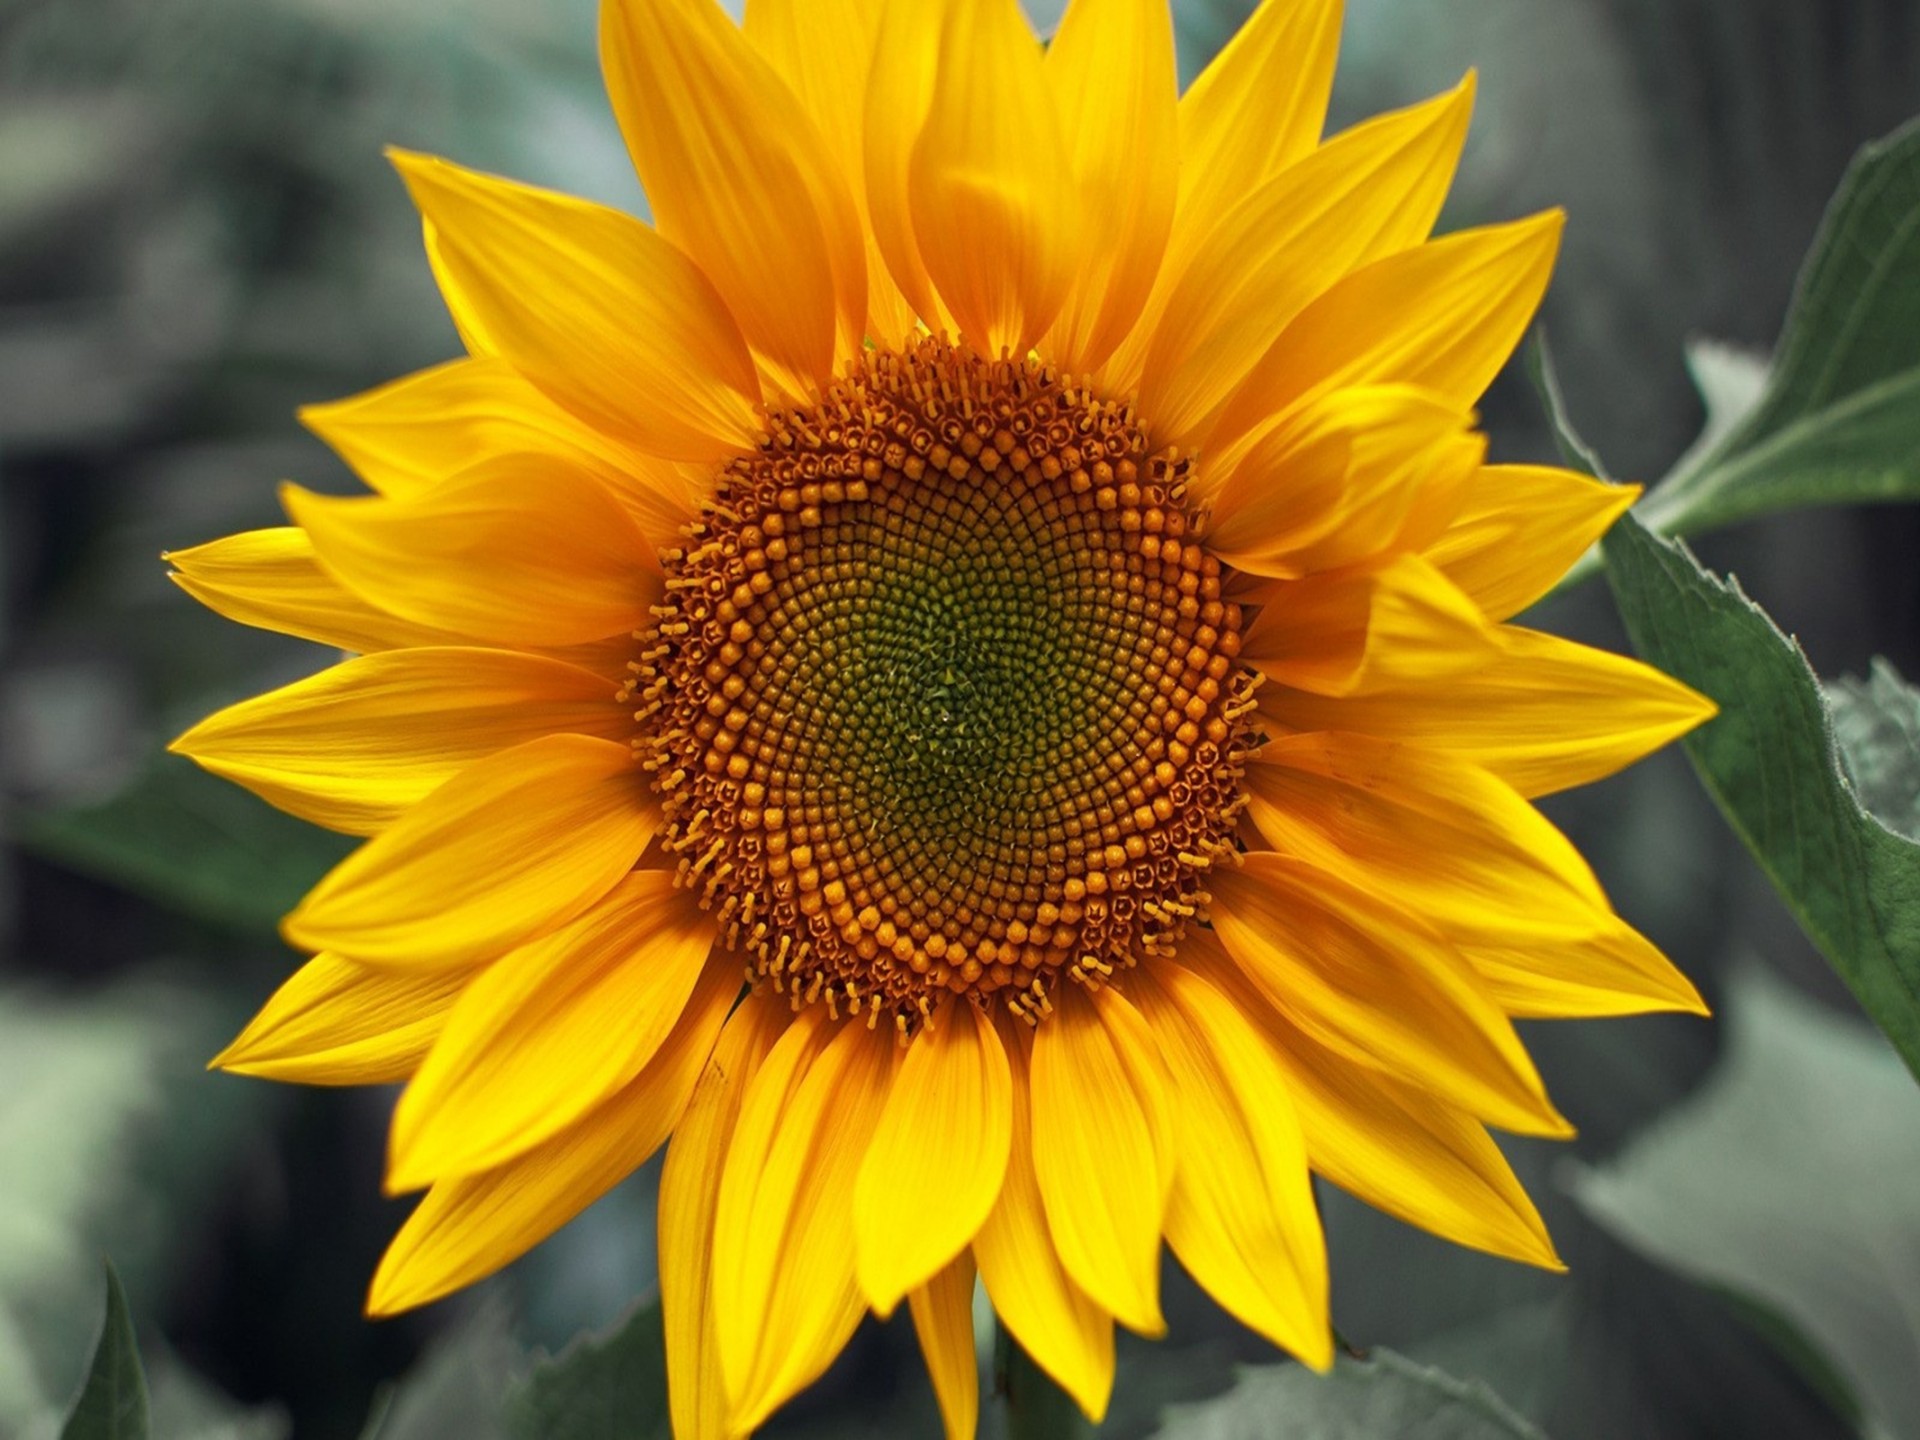 Sunflower Flower Images Hd - HD Wallpaper 